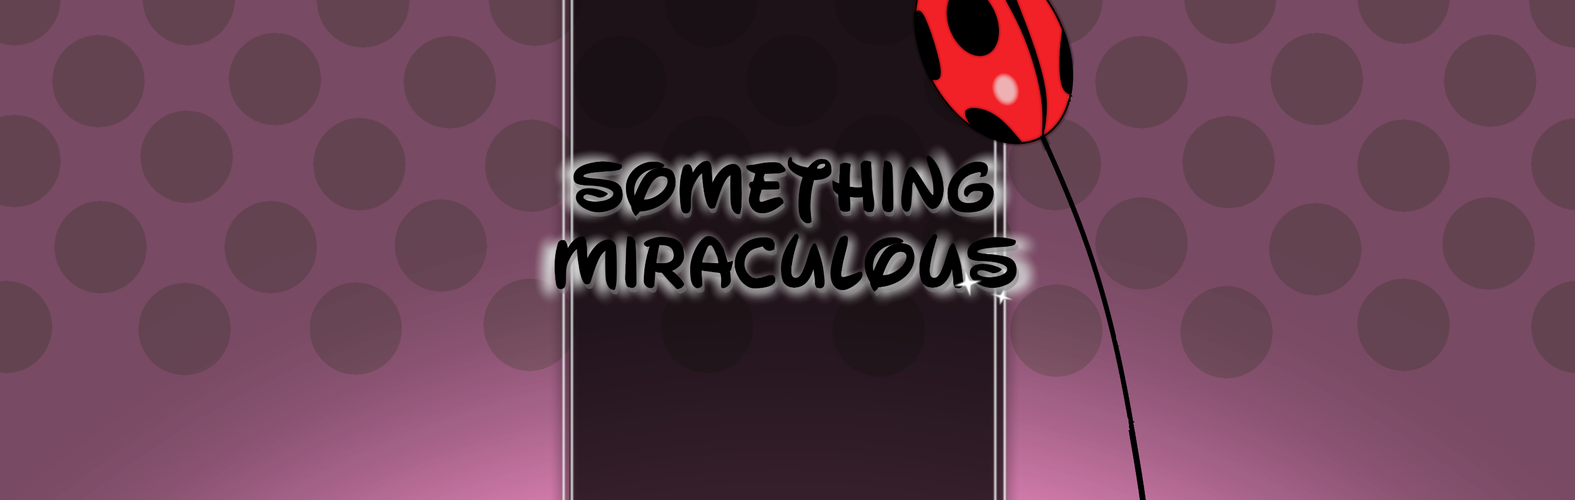 Something Miraculous by Moogchoog